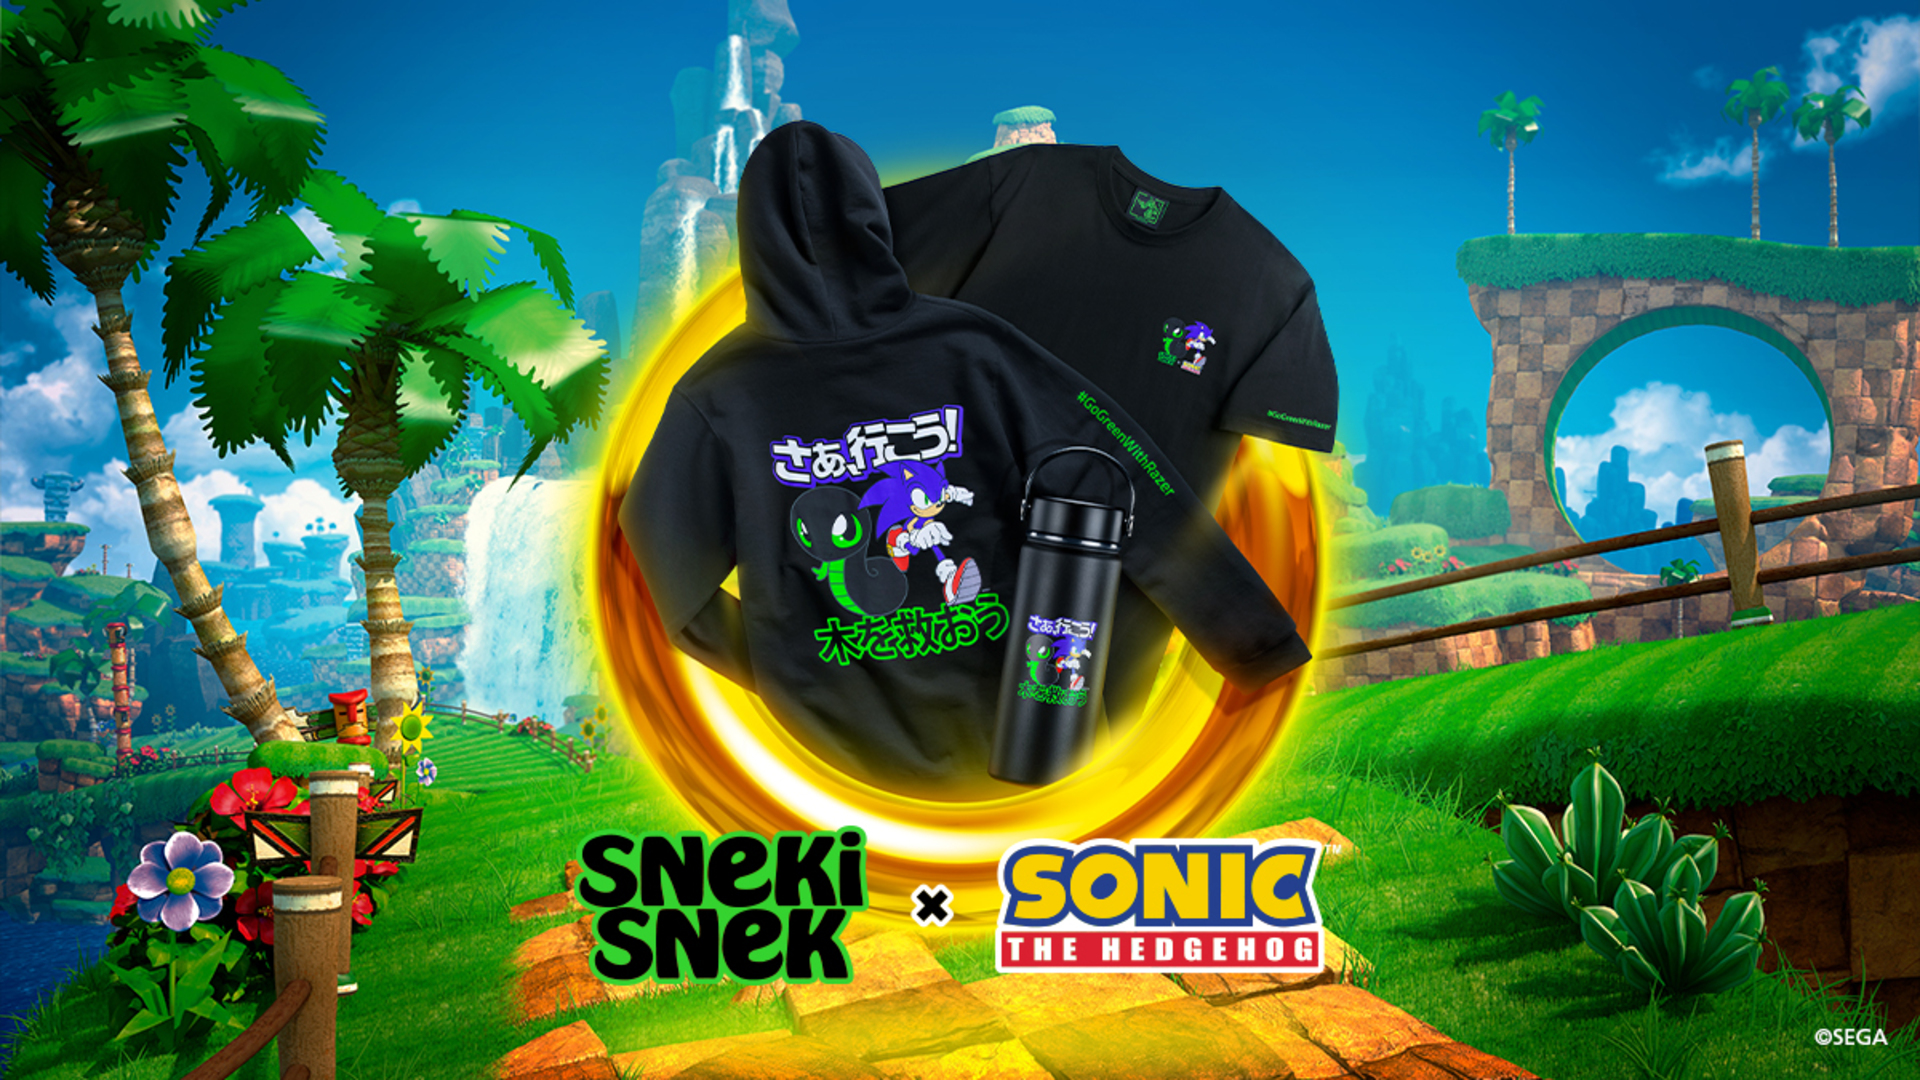 Sneki Snek e Sonic se unem em nova coleção em prol do planeta!